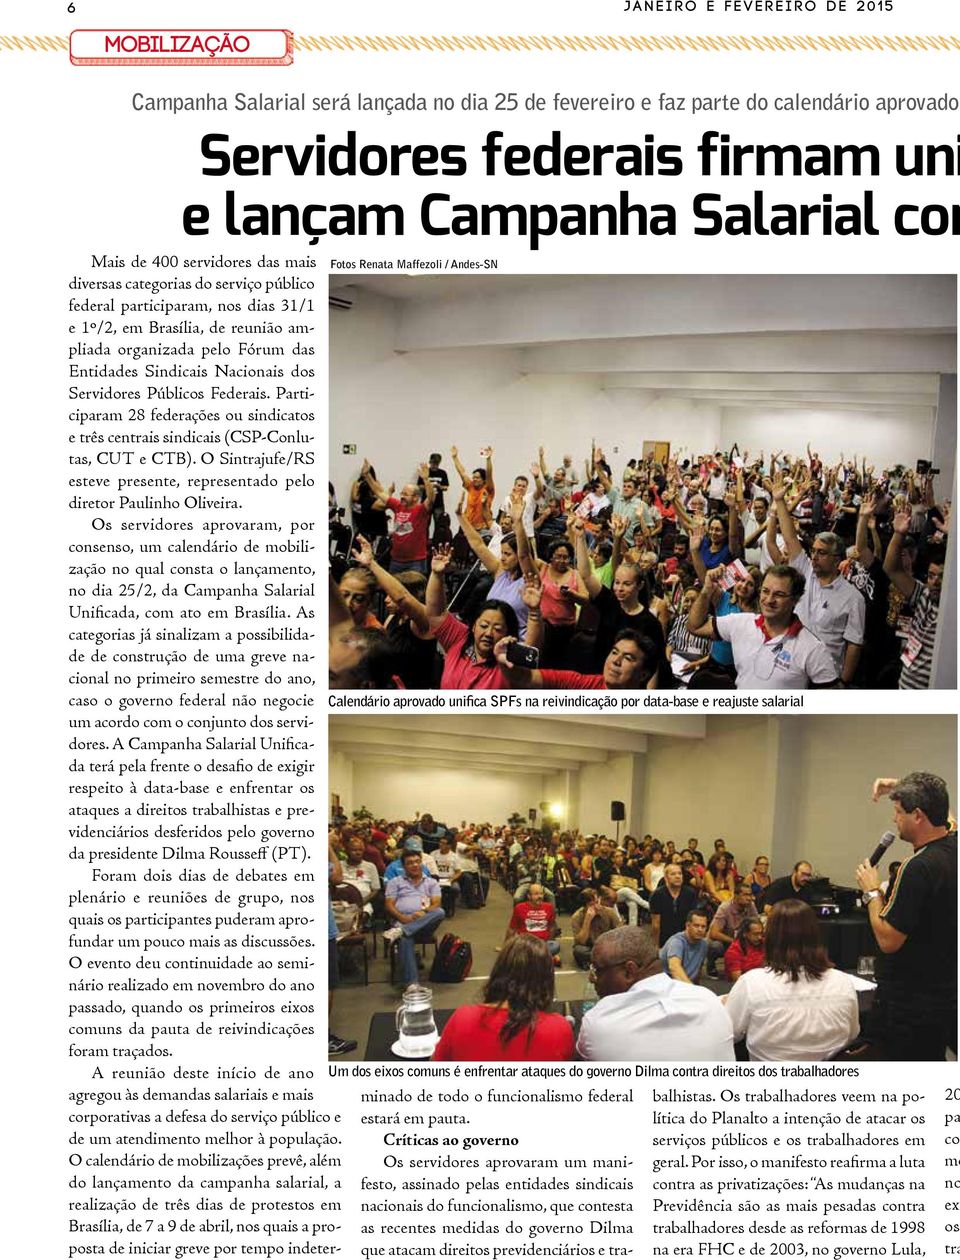 trabalhadores Mais de 400 servidores das mais diversas categorias do serviço público federal participaram, nos dias 31/1 e 1º/2, em Brasília, de reunião ampliada organizada pelo Fórum das Entidades